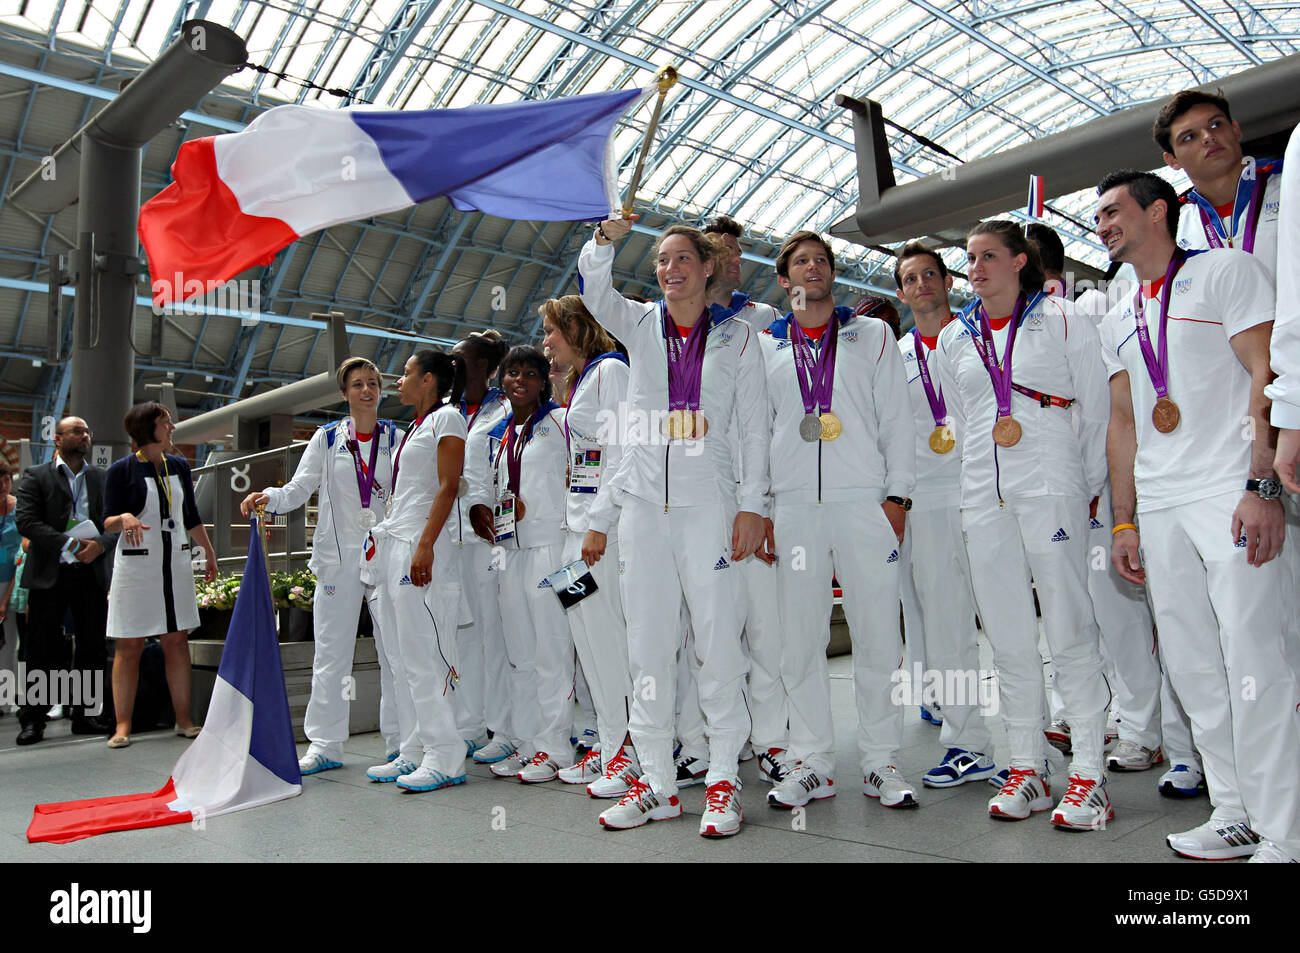 Jeux olympiques - les athlètes partent de l'aéroport international de St Pancras.L'équipe olympique française quitte les Jeux Olympiques de Londres 2012 en Eurostar depuis la gare de St Pancras, Londres. Banque D'Images